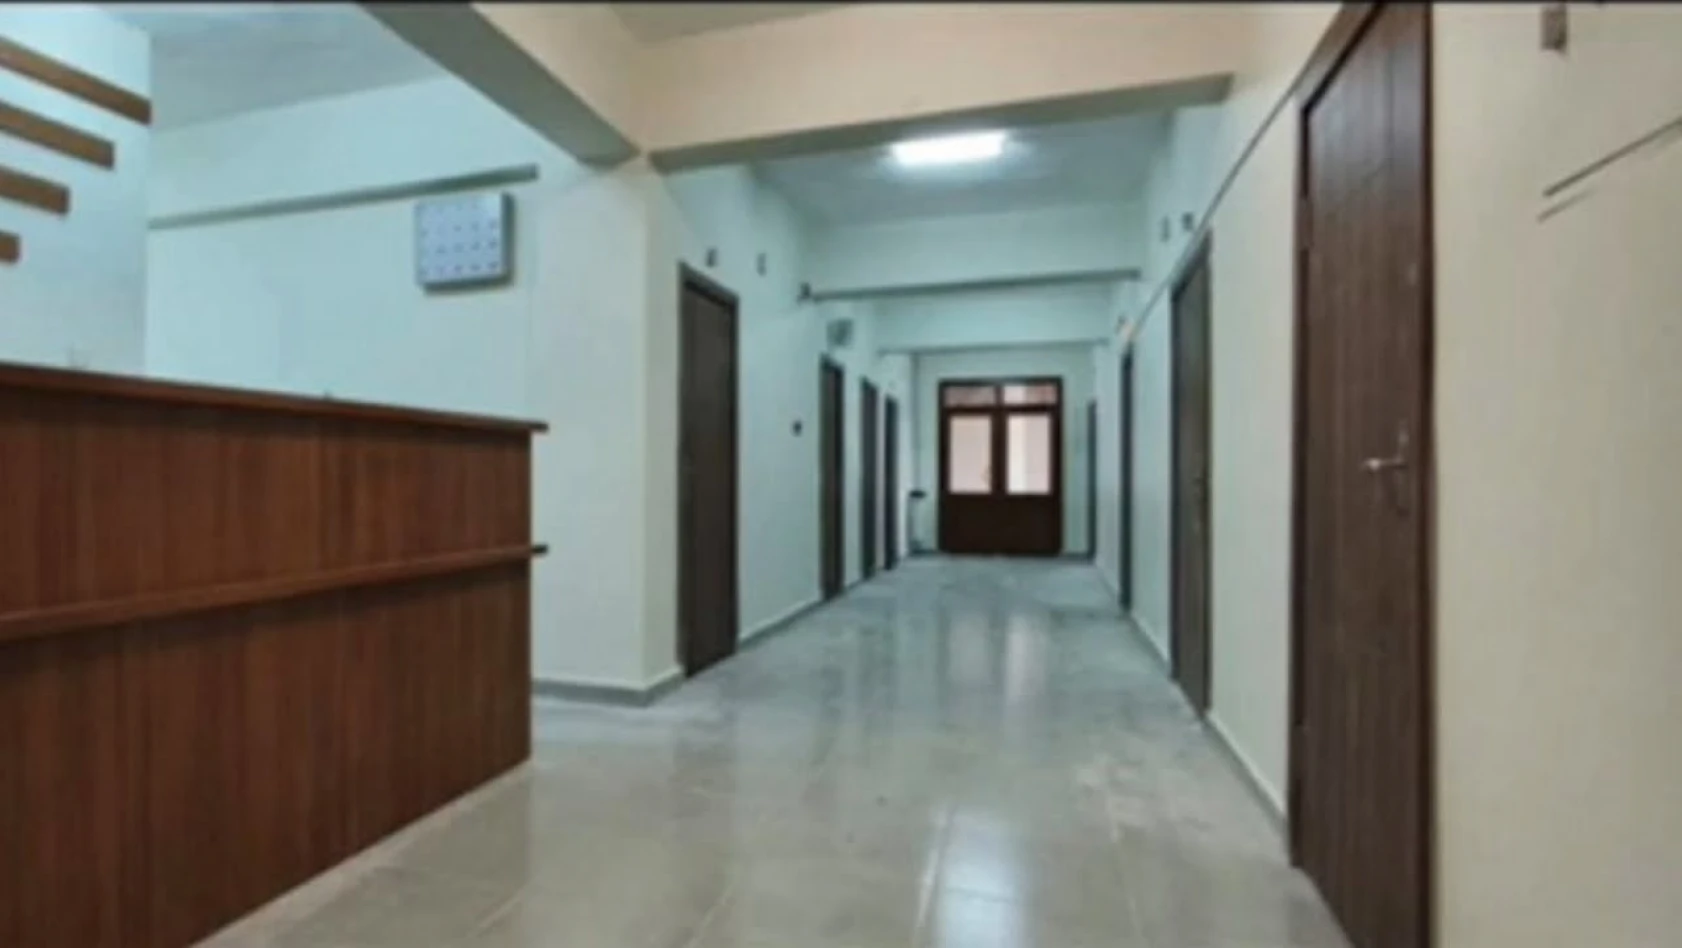 Hanönü'nde yatan hasta servisi hizmete açıldı